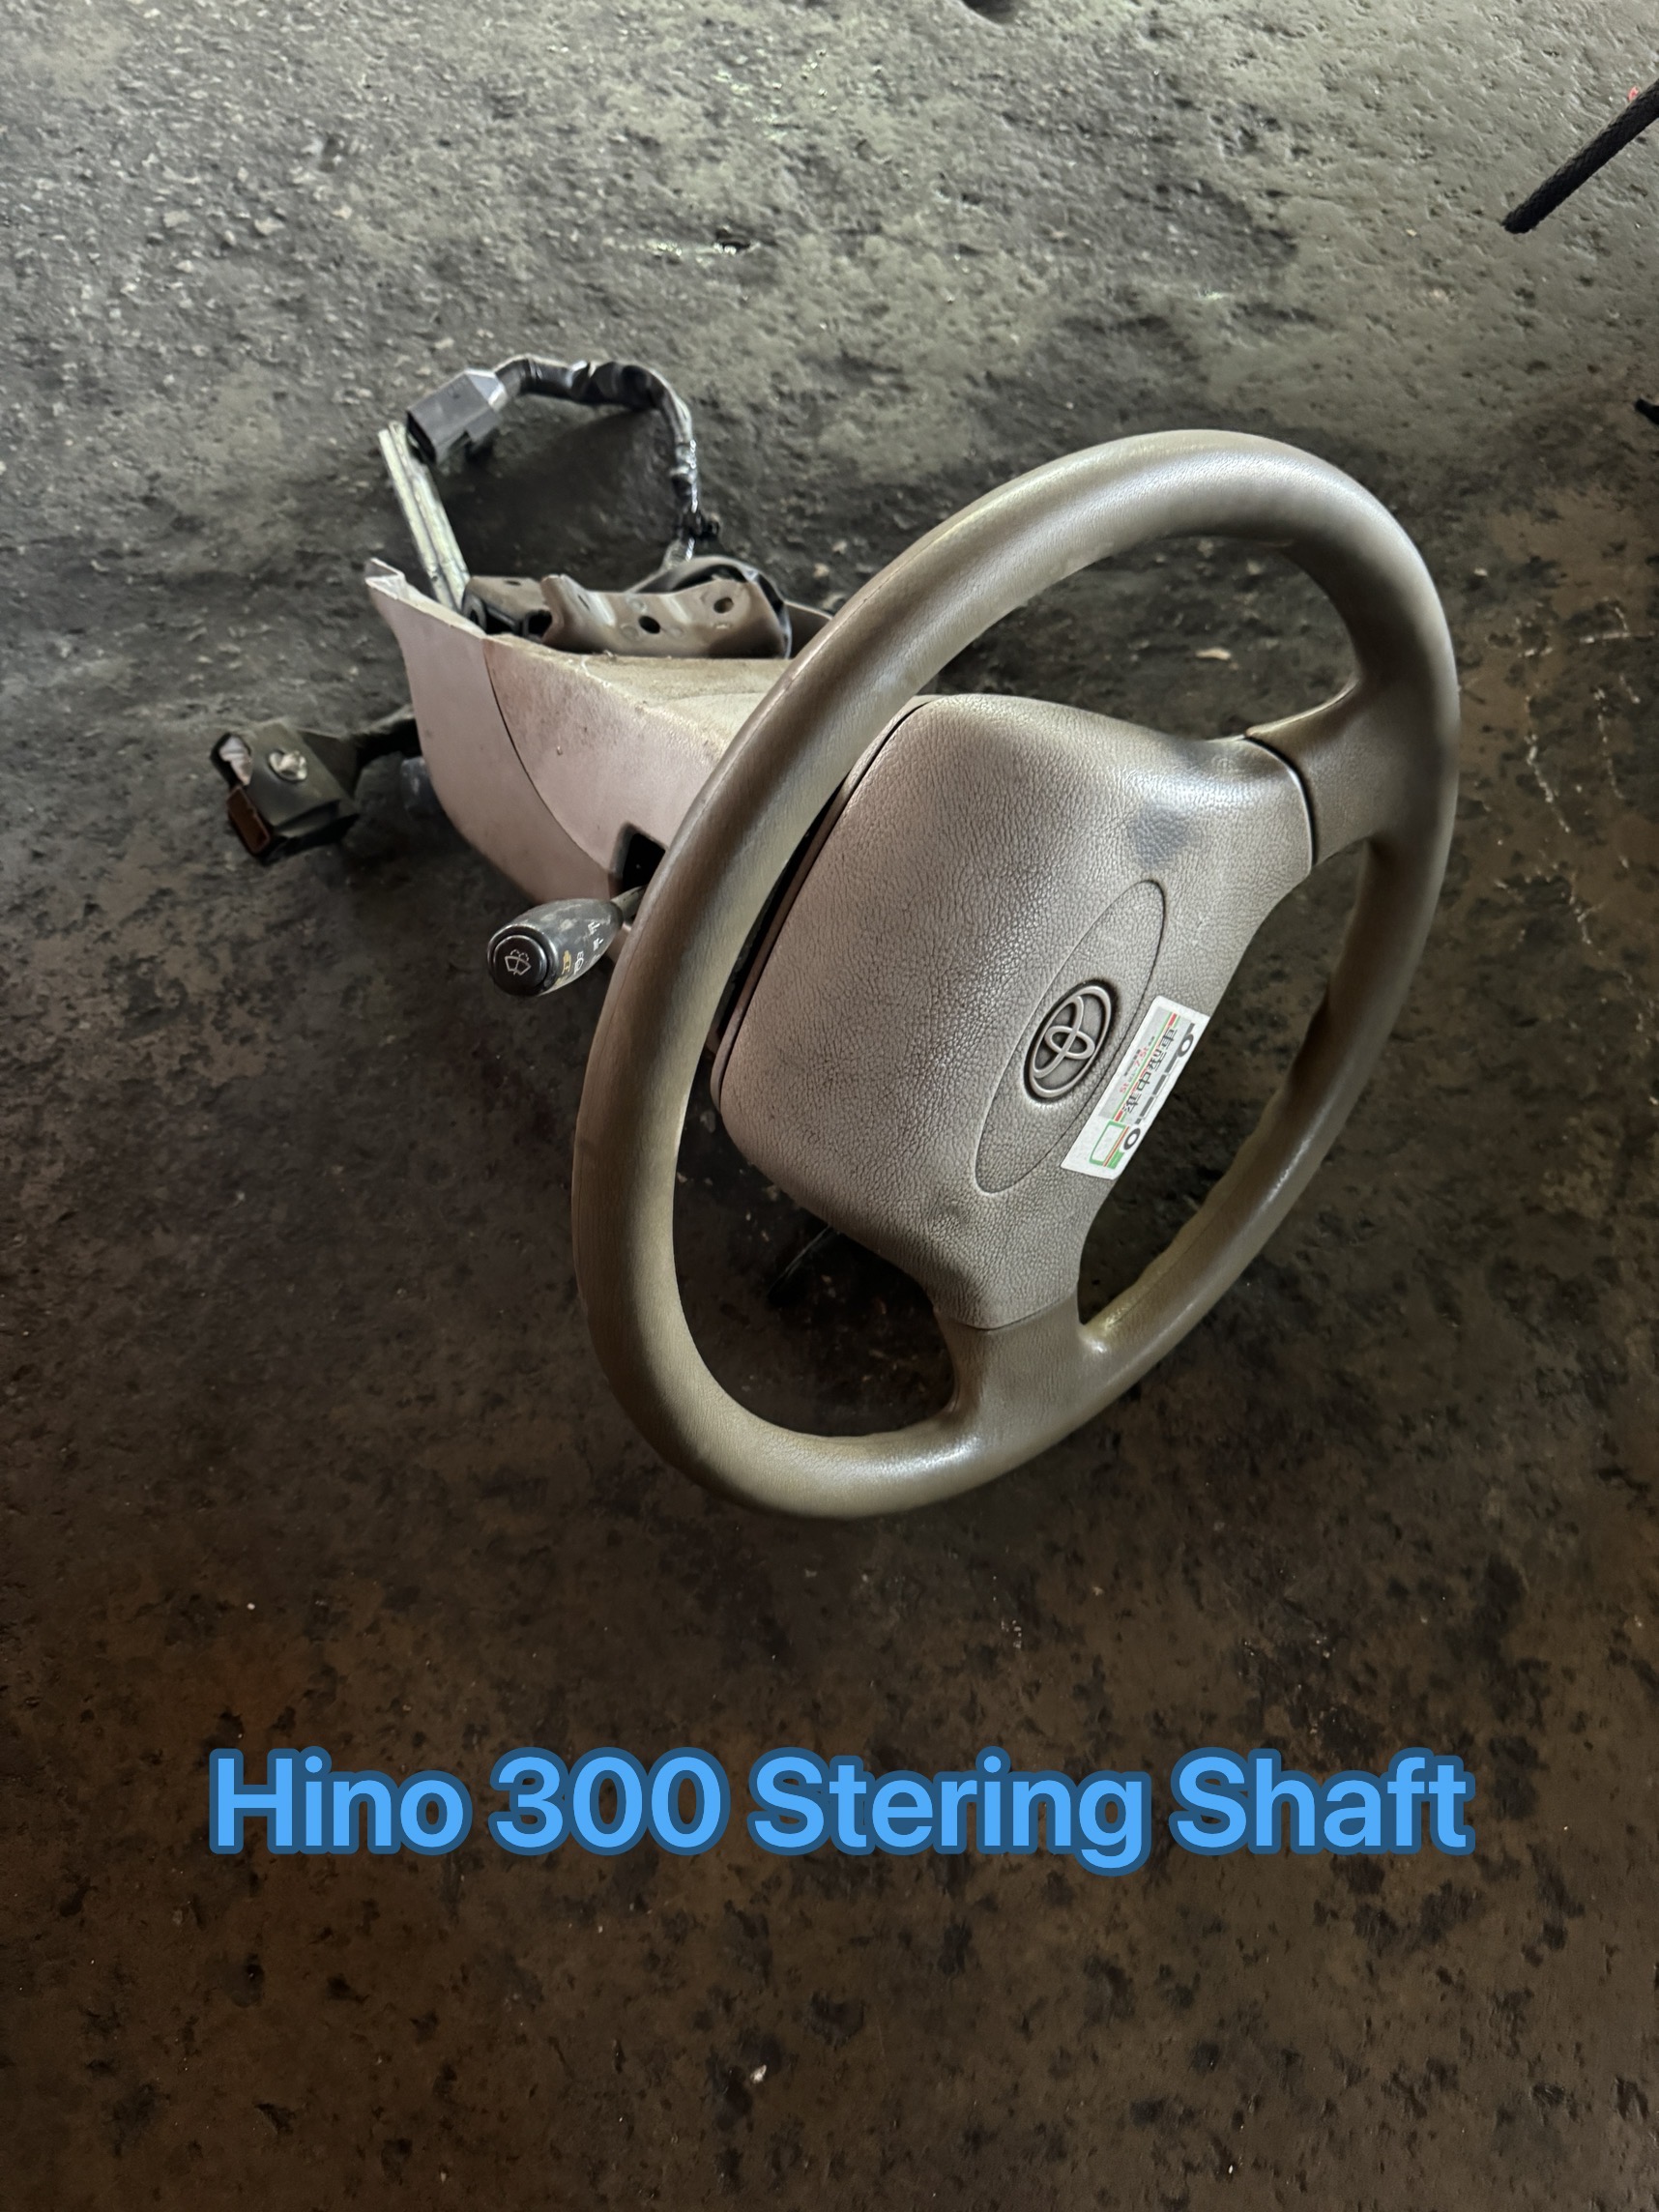 Hino 300 Dutro Stering Shaft